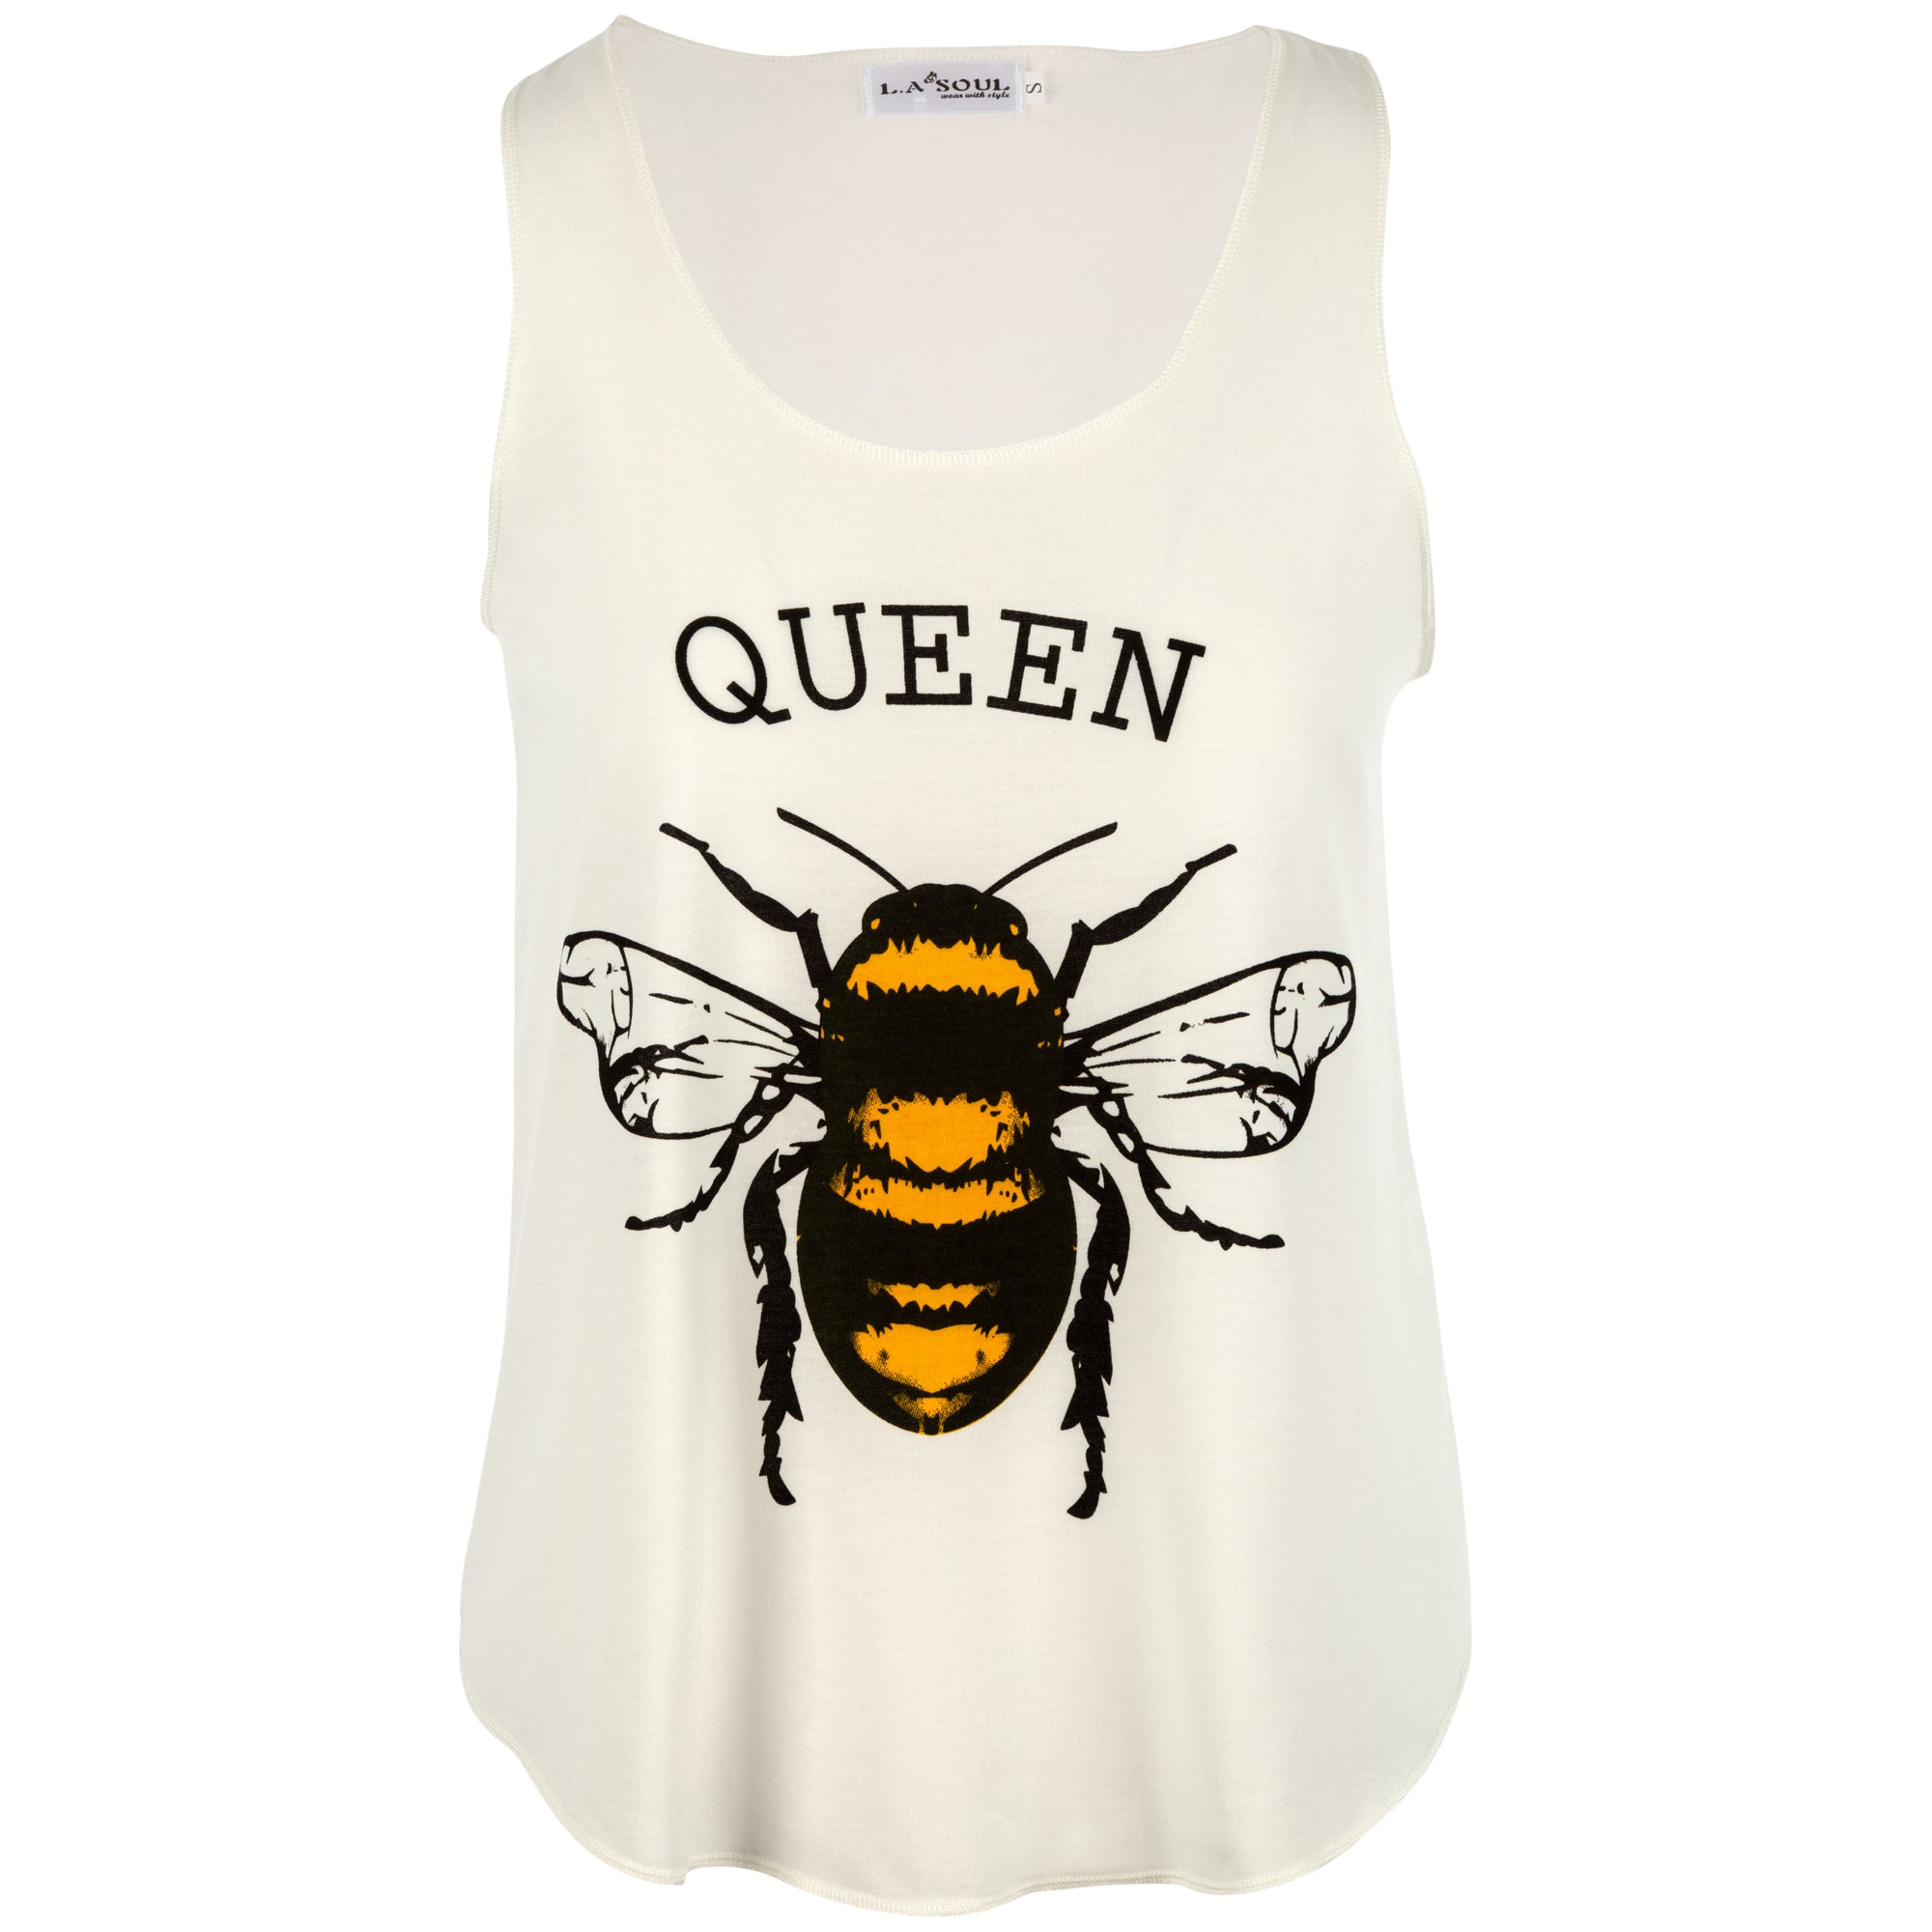 Queen Bee Tank Top - XL